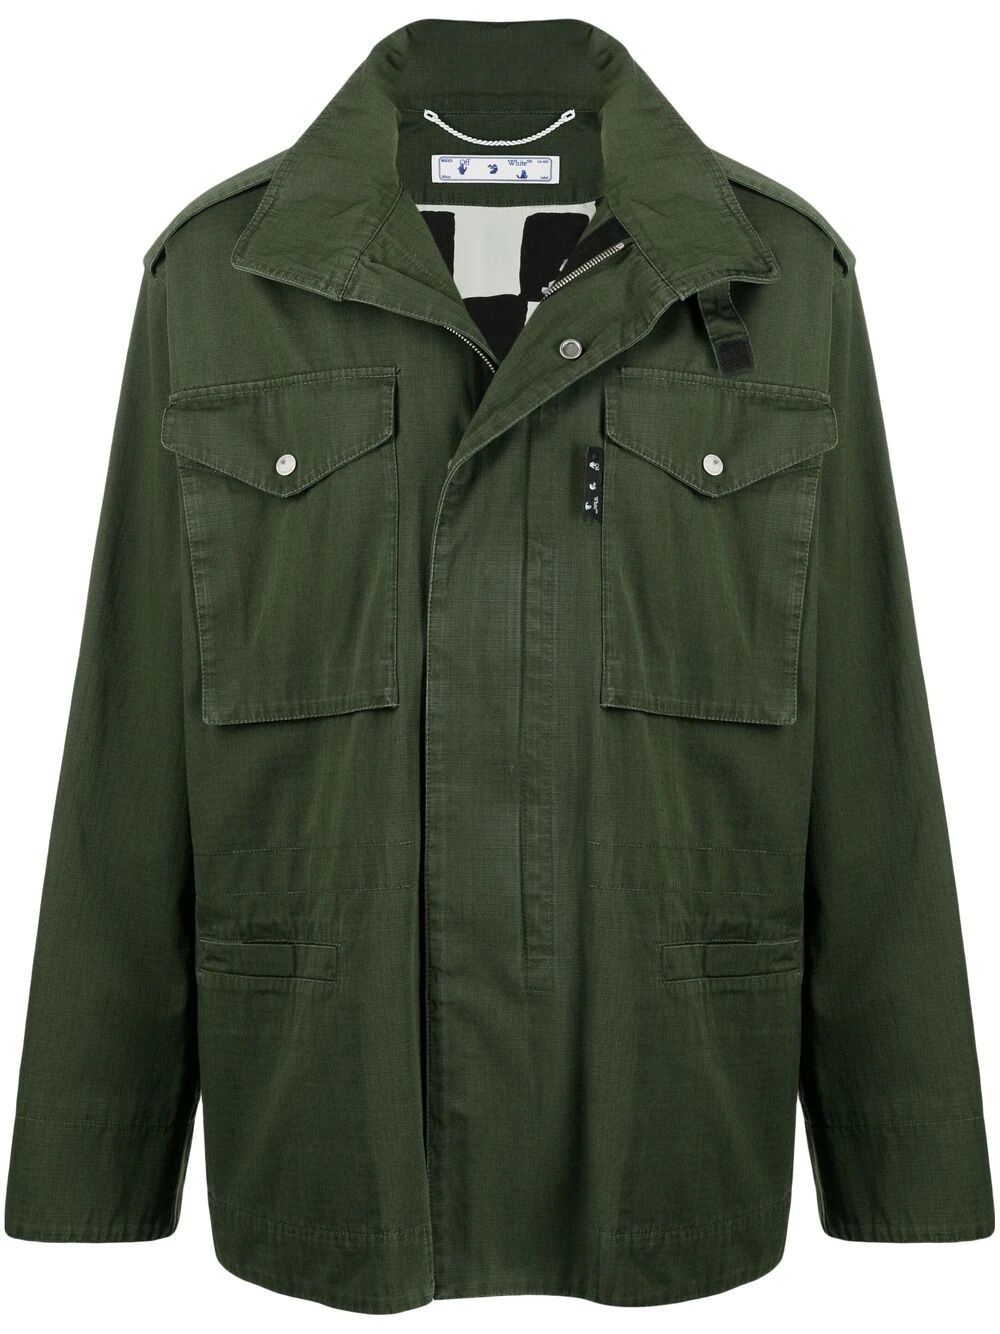 Arrows-motif hooded jacket - 1